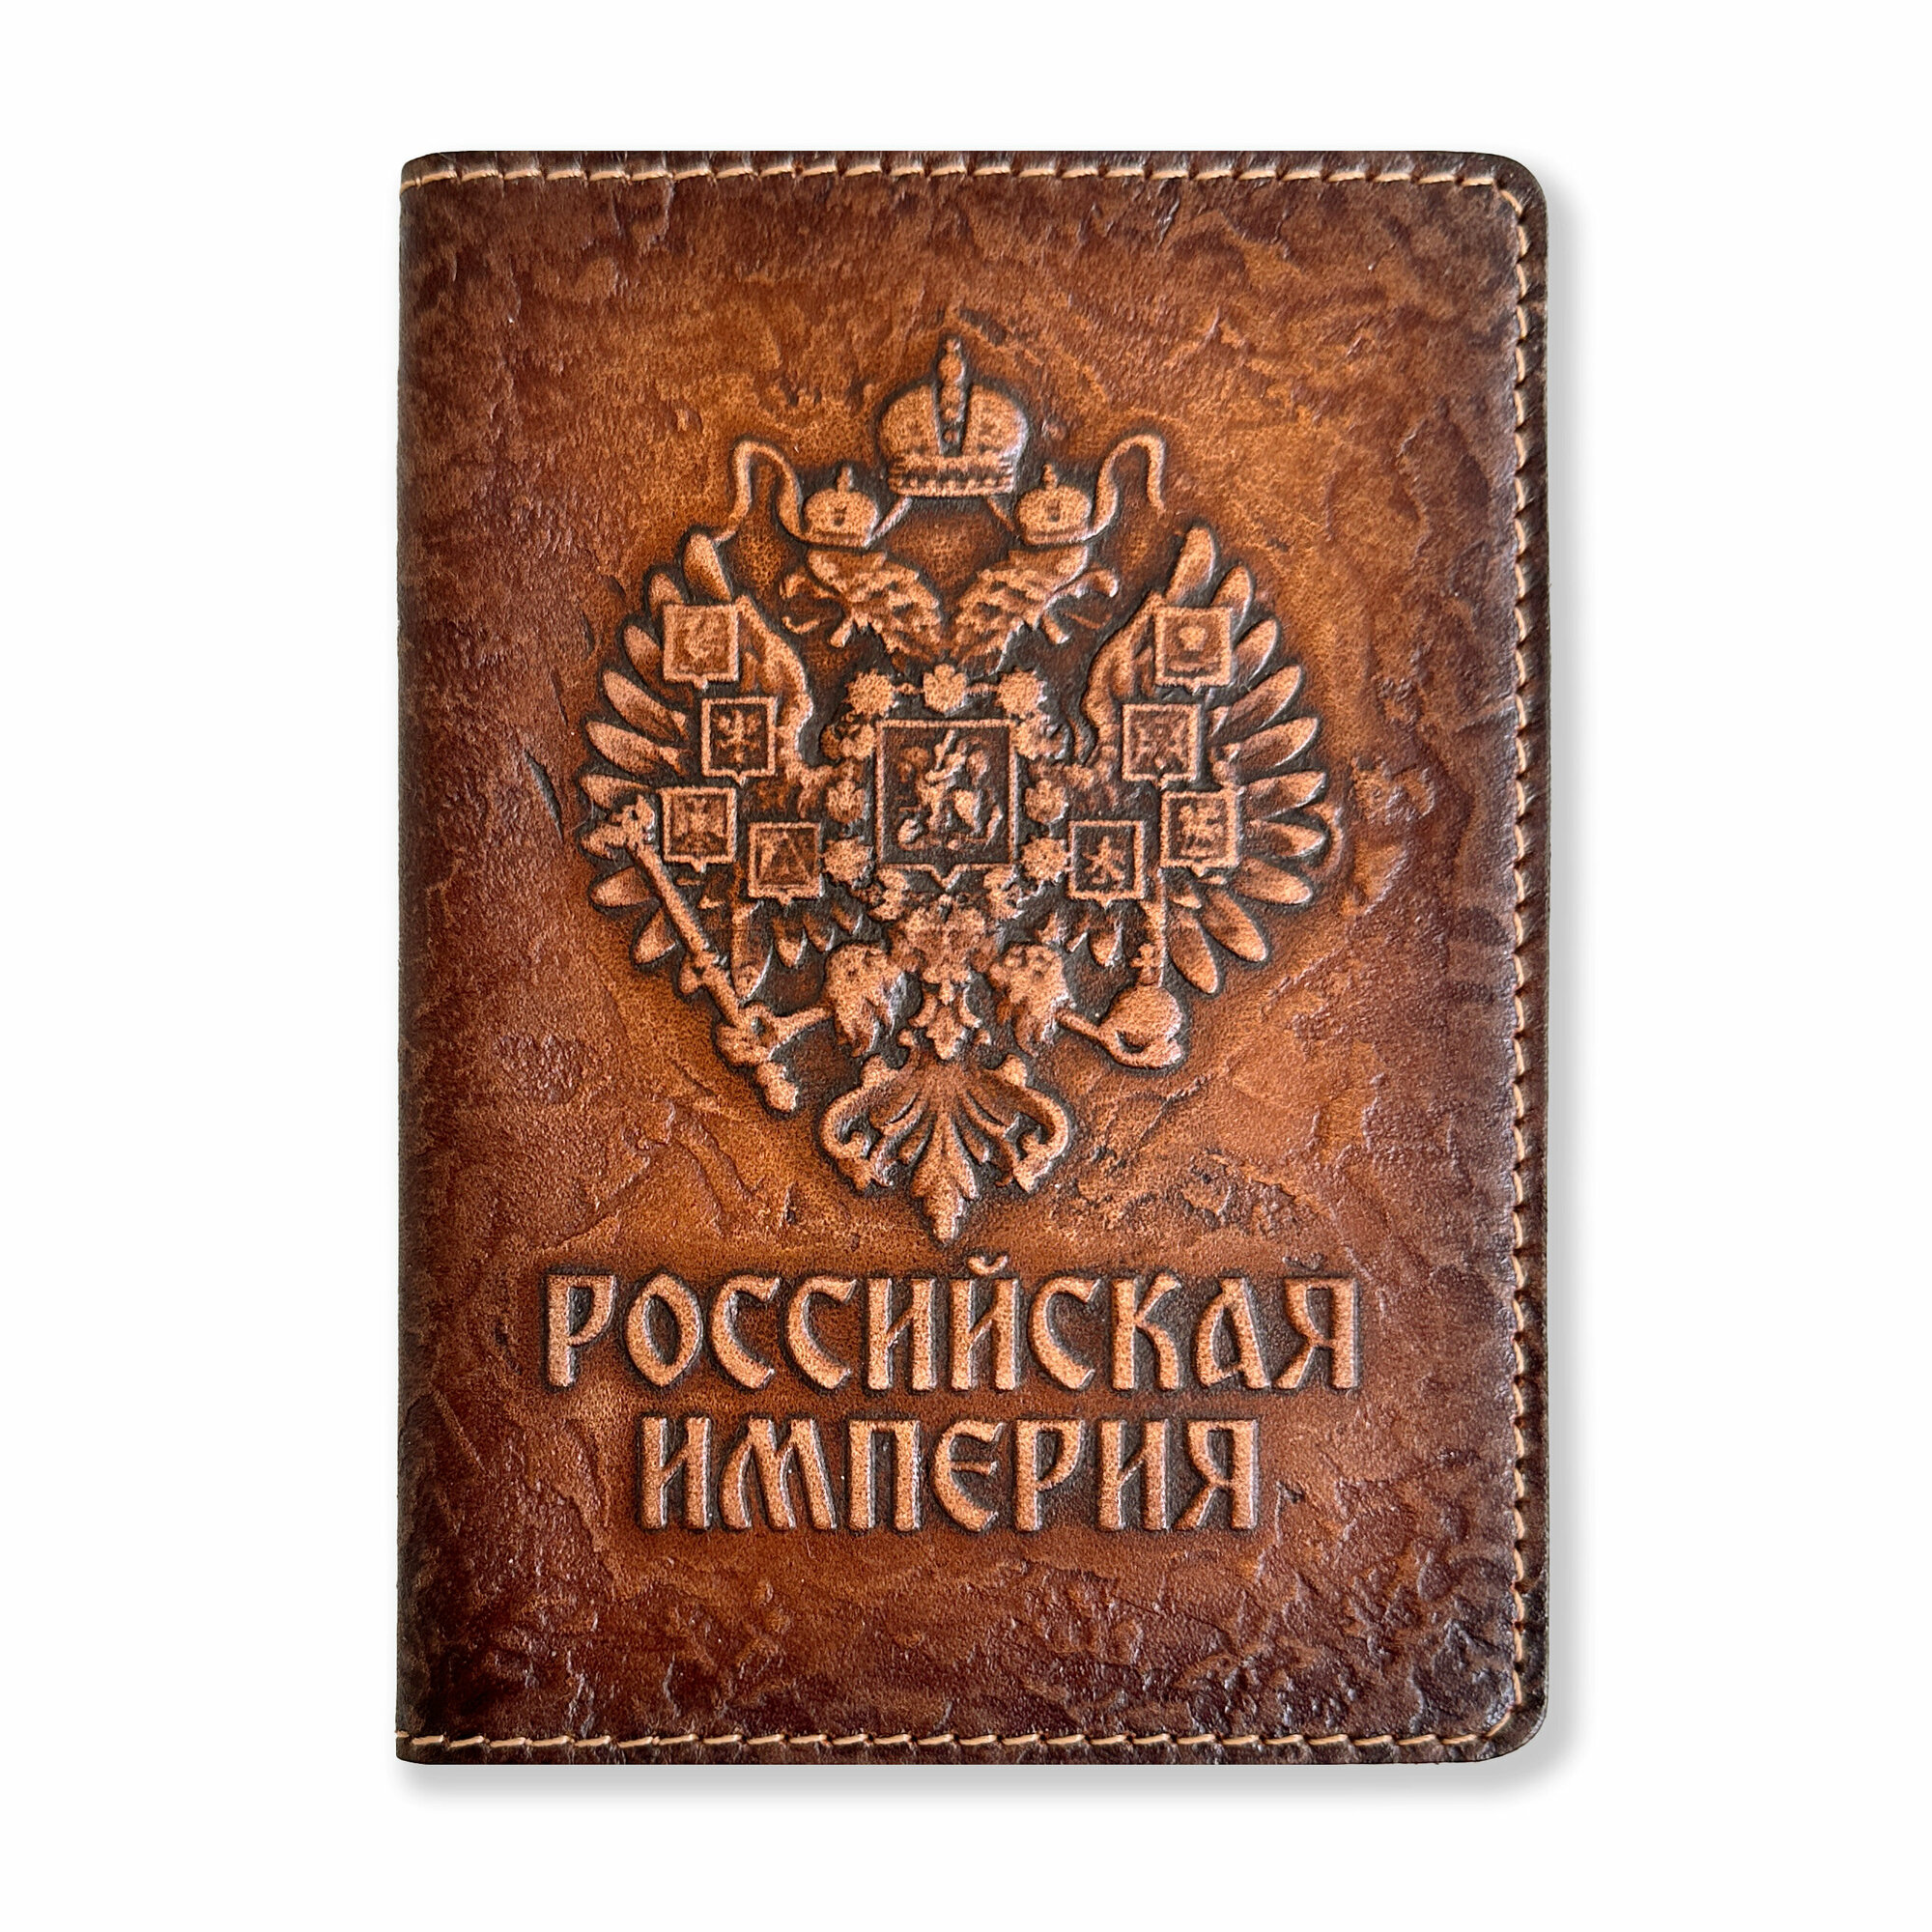 Обложка для паспорта kRAst "Российская империя" 3D